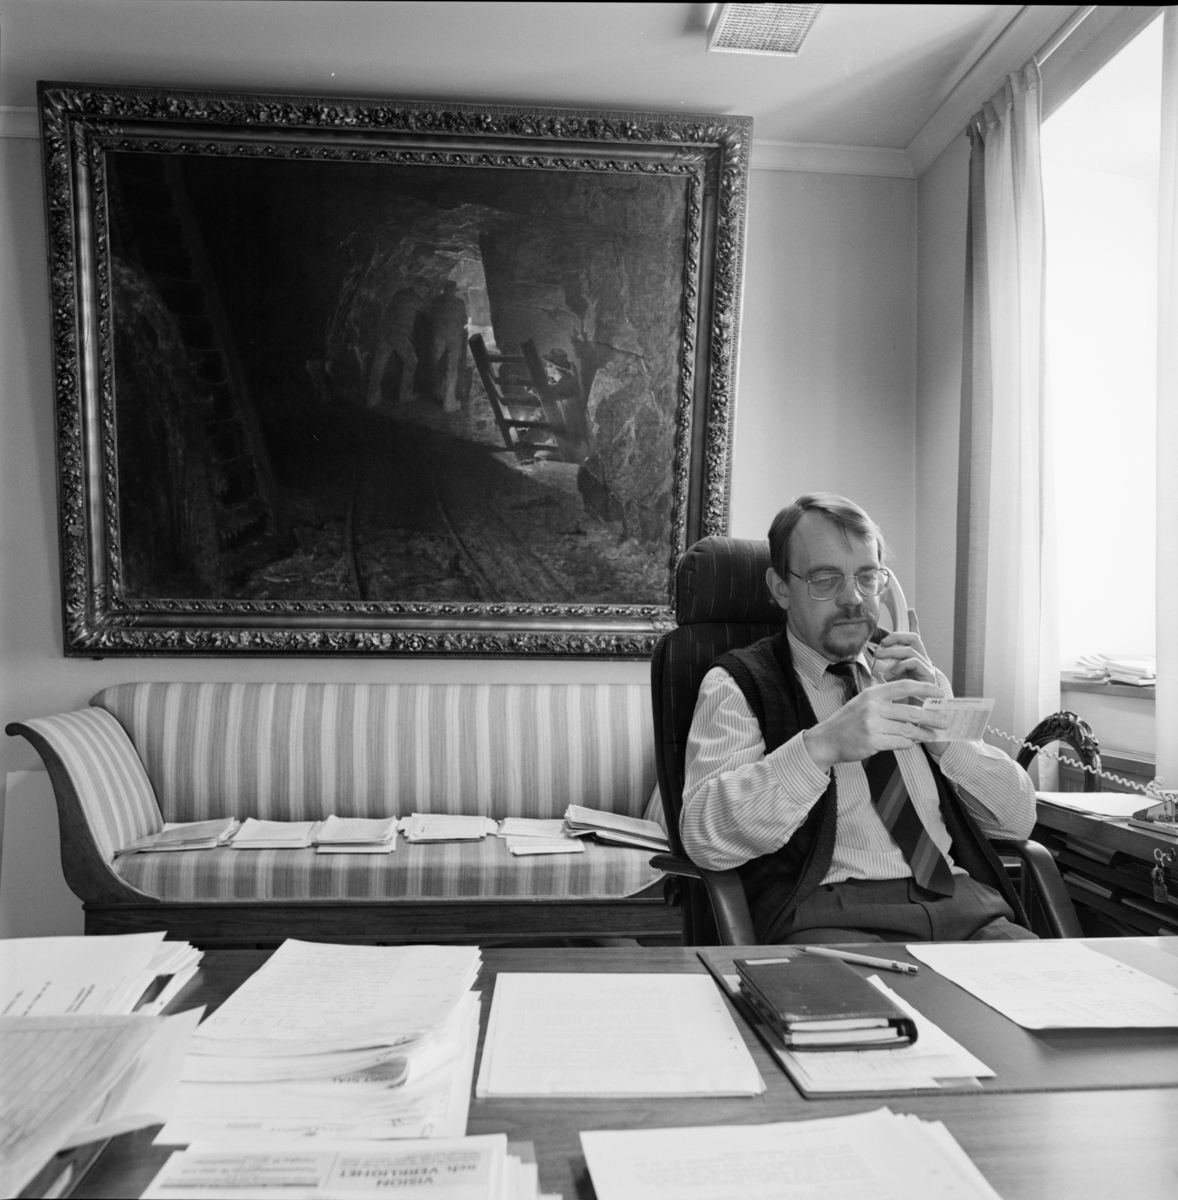 Verkställande direktör/platschef Mats Törnqvist på sitt kontor, Gruvkontoret, Dannemora Gruvor AB, Dannemora, Uppland hösten 1991